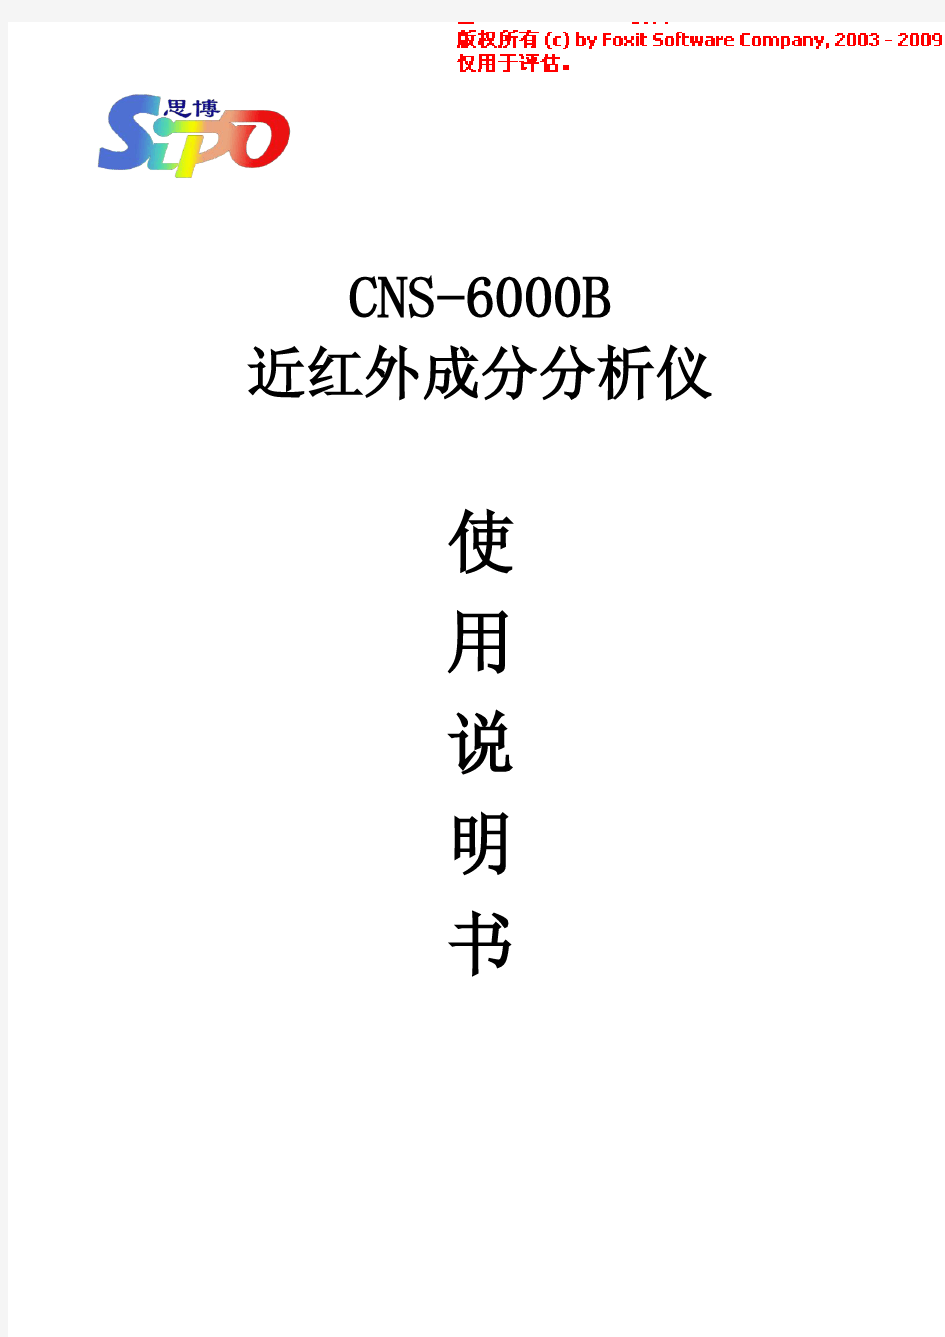 国产思博CNS-6000B近红外谷物分析仪